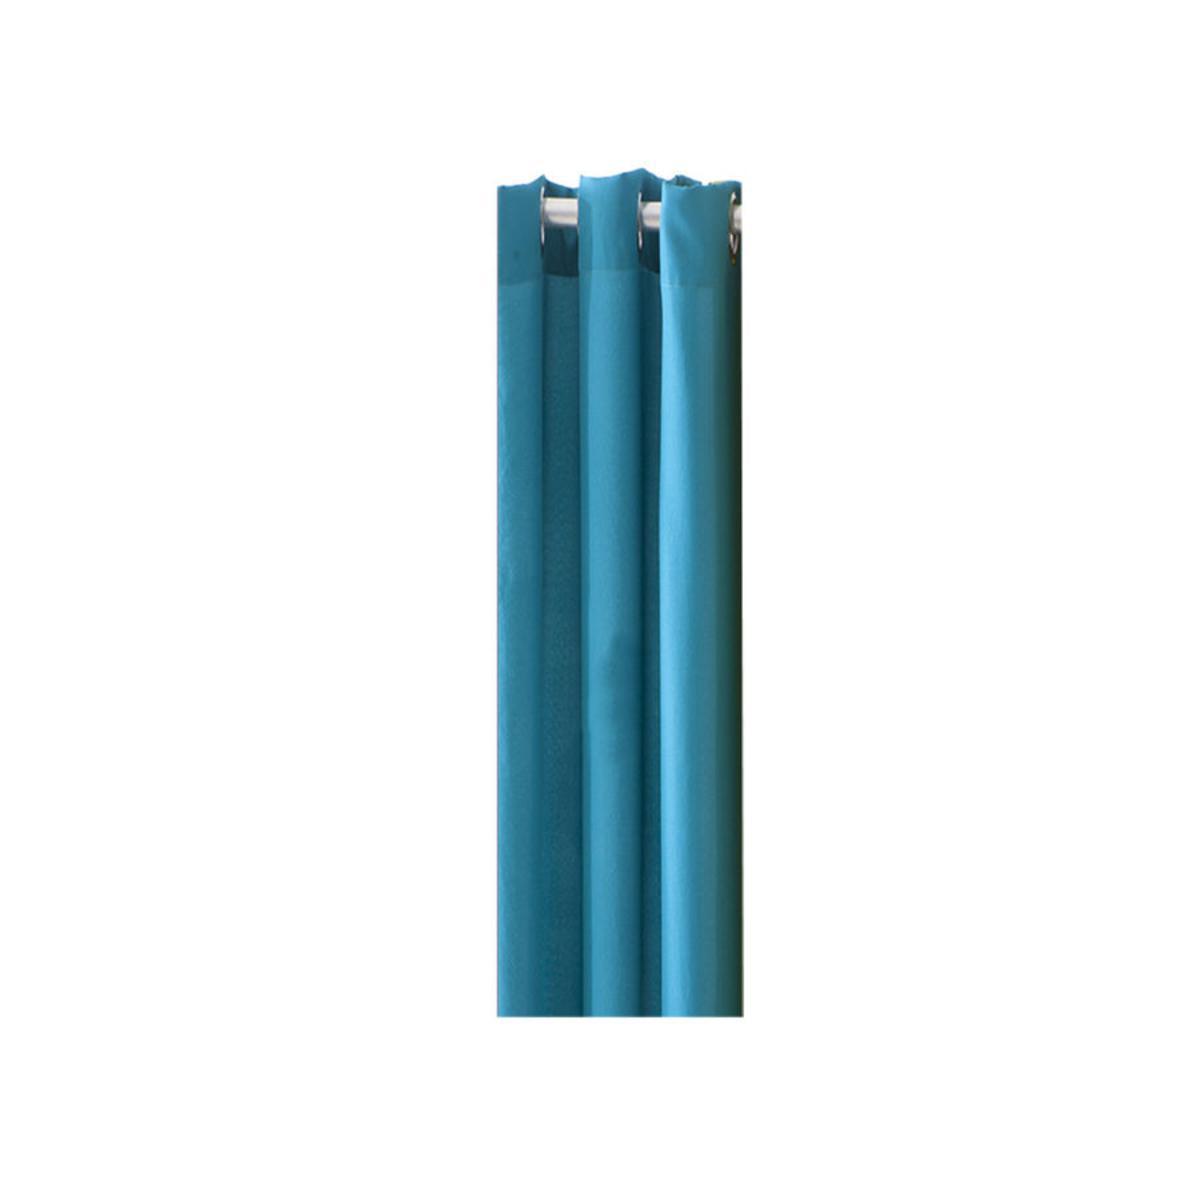 Rideau en polyester - 140 x 260 cm - Bleu